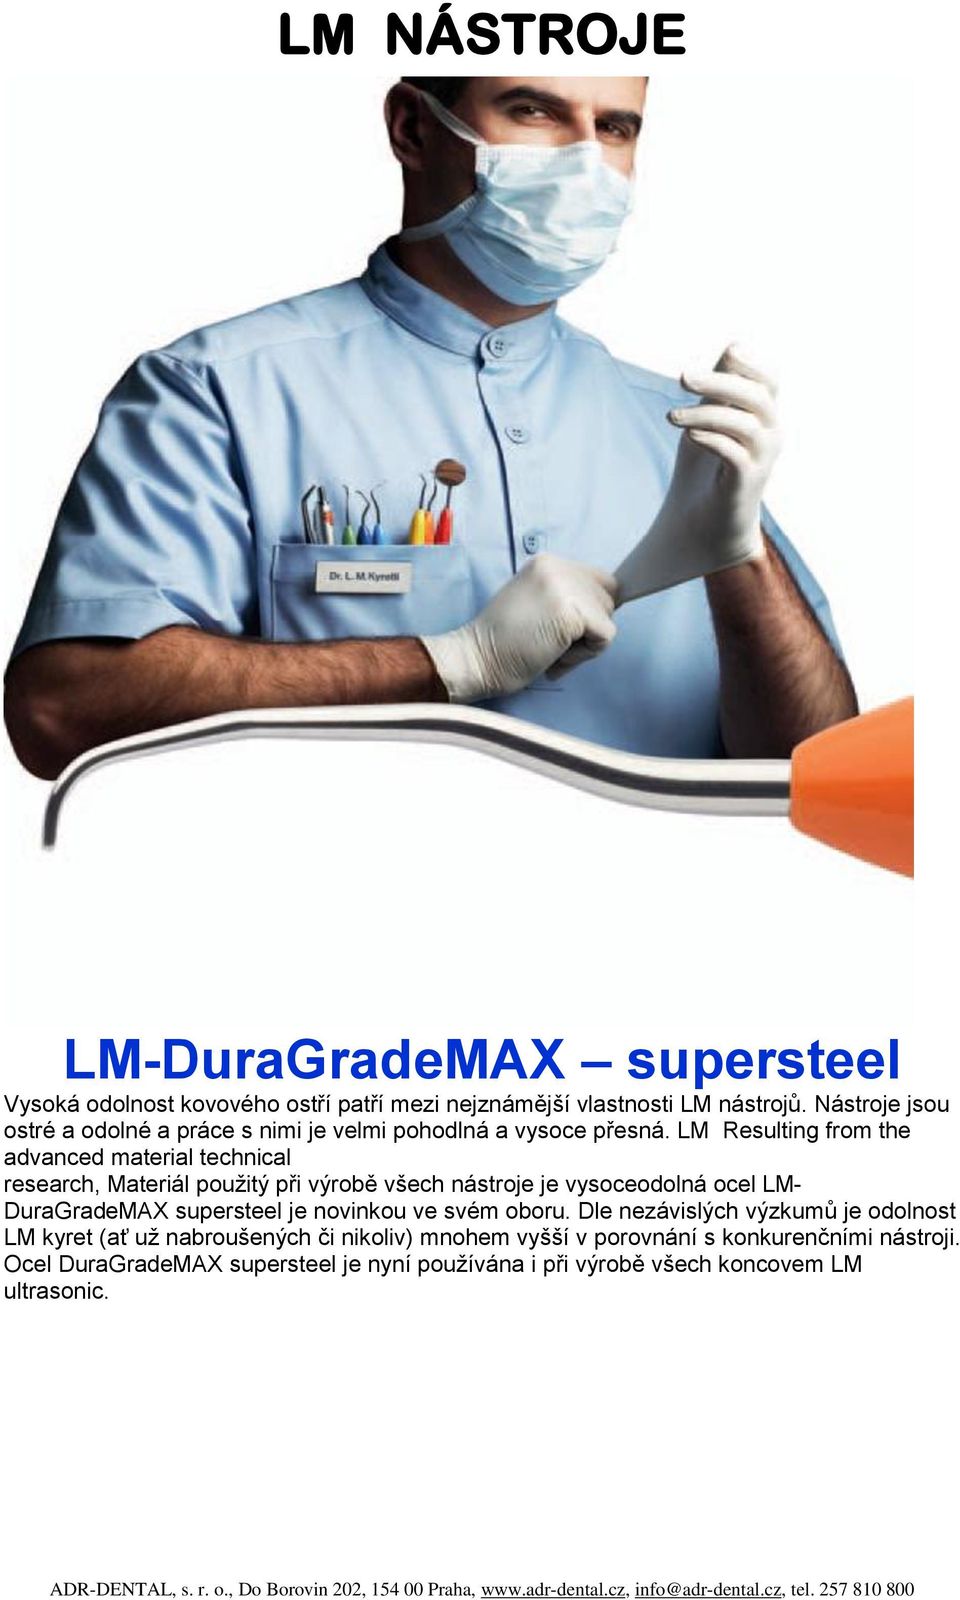 LM Resulting from the advanced material technical research, Materiál použitý při výrobě všech nástroje je vysoceodolná ocel LM- DuraGradeMAX